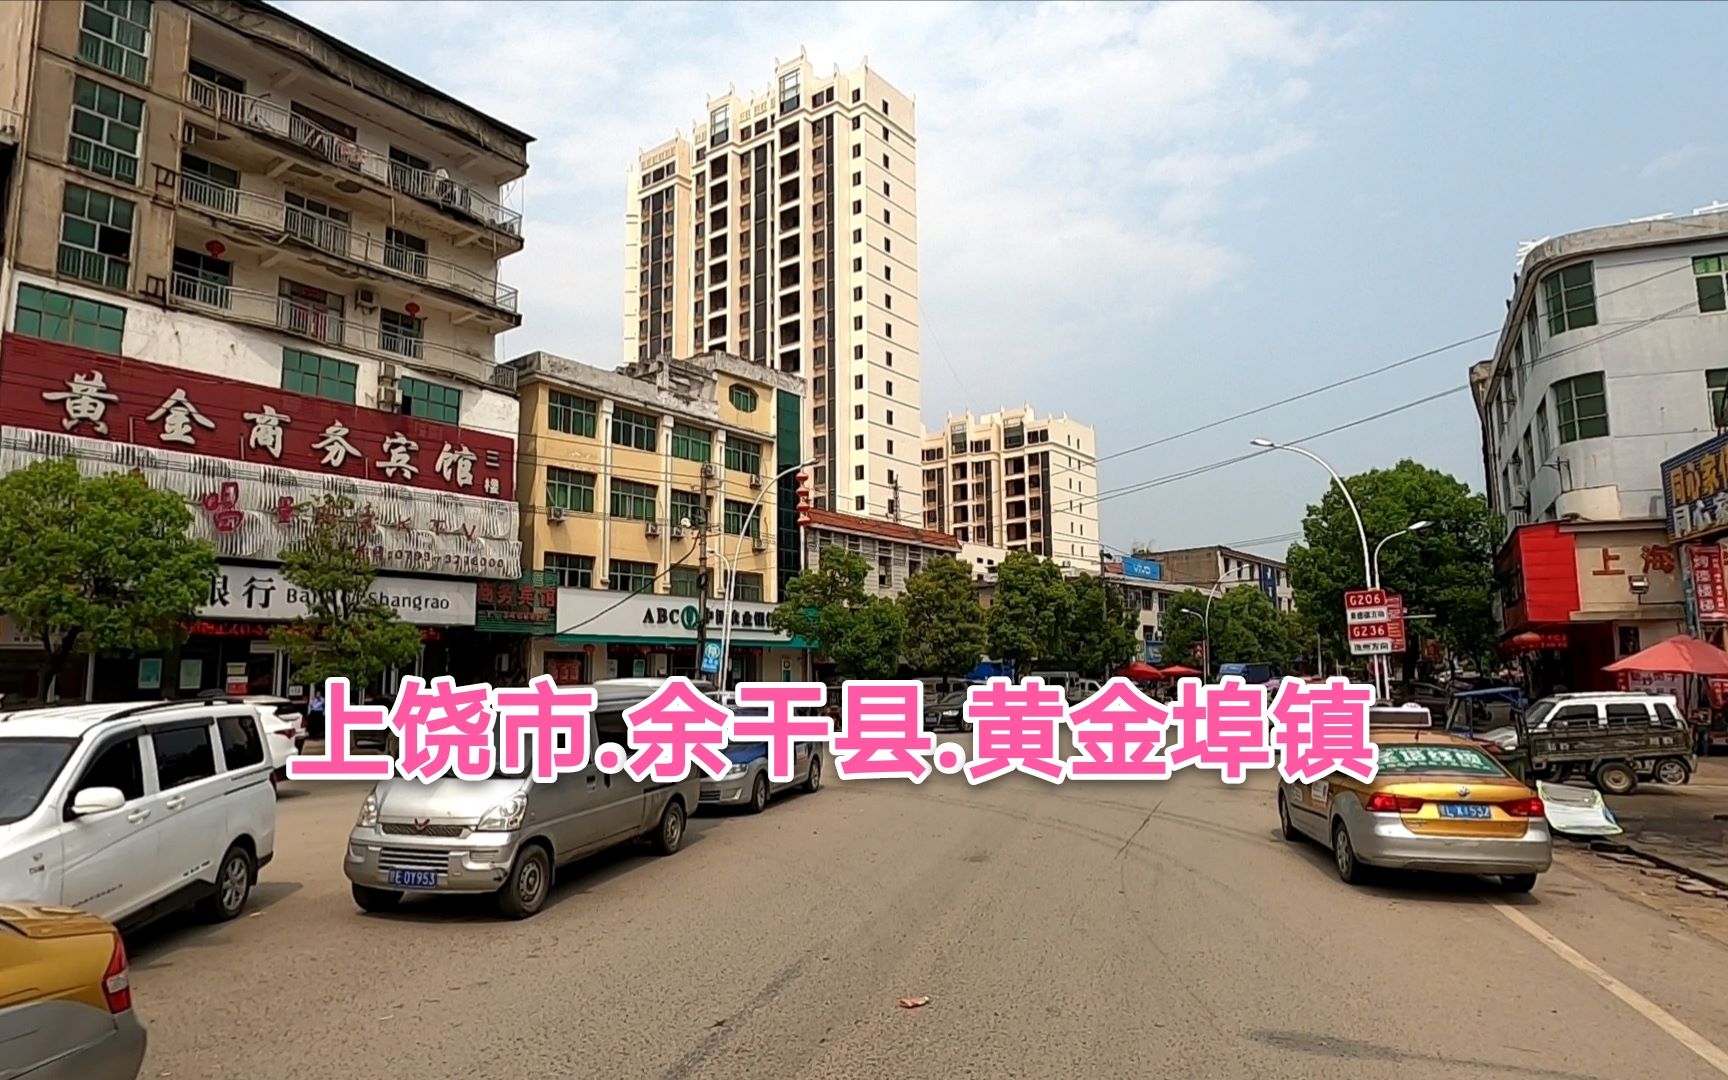 江西省上饶市余干县黄金埠镇街景,看起来好像一座非常不错的县城